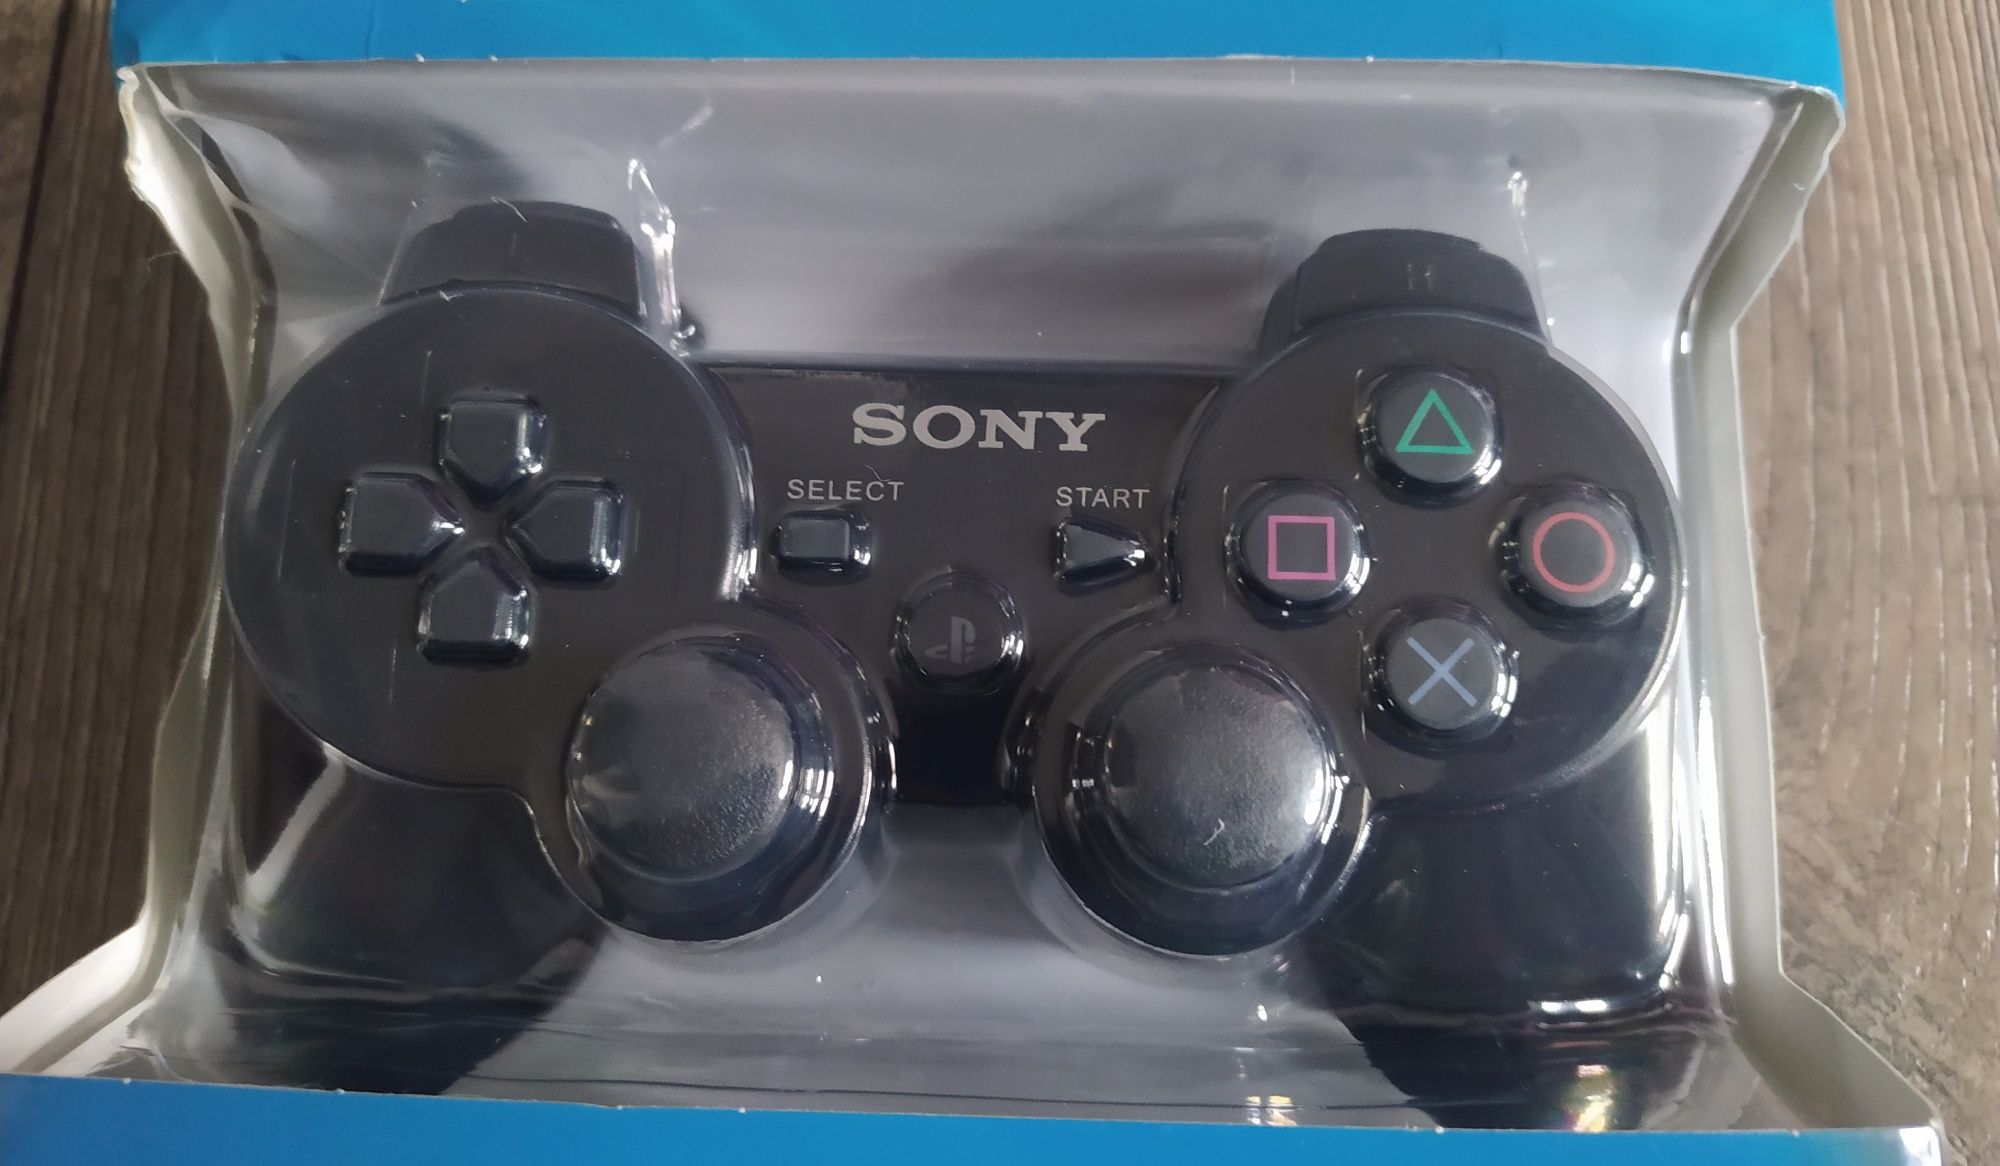 Pad PS3 Sony DualShock 3 Bezprzewodowy Nowy